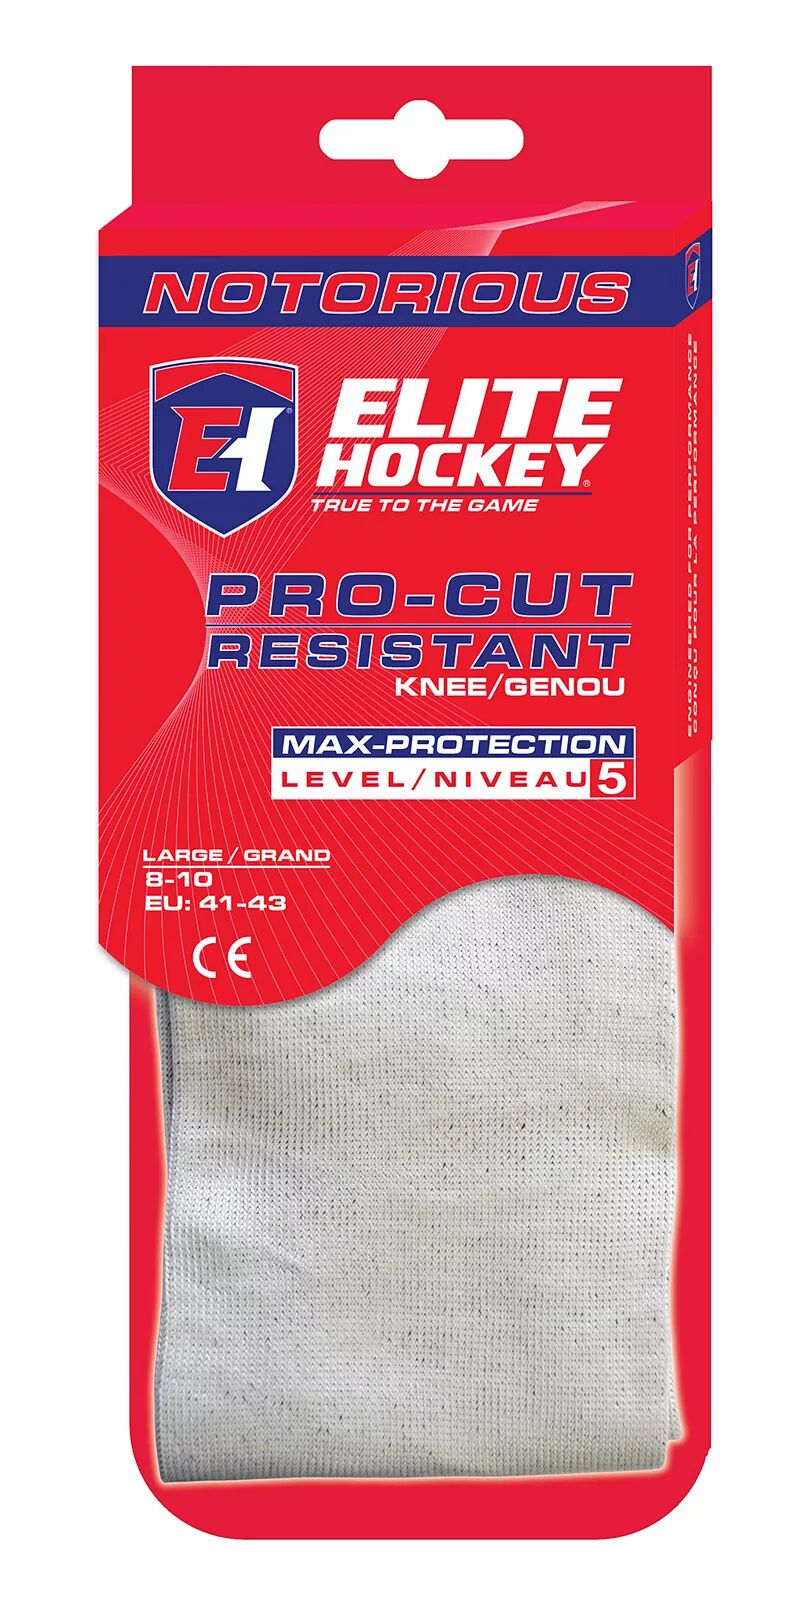 Гольфы Elite Hockey Notorious Pro-Cut, устойчивые к порезам Icon Sports Group, серебристый/черный цена и фото